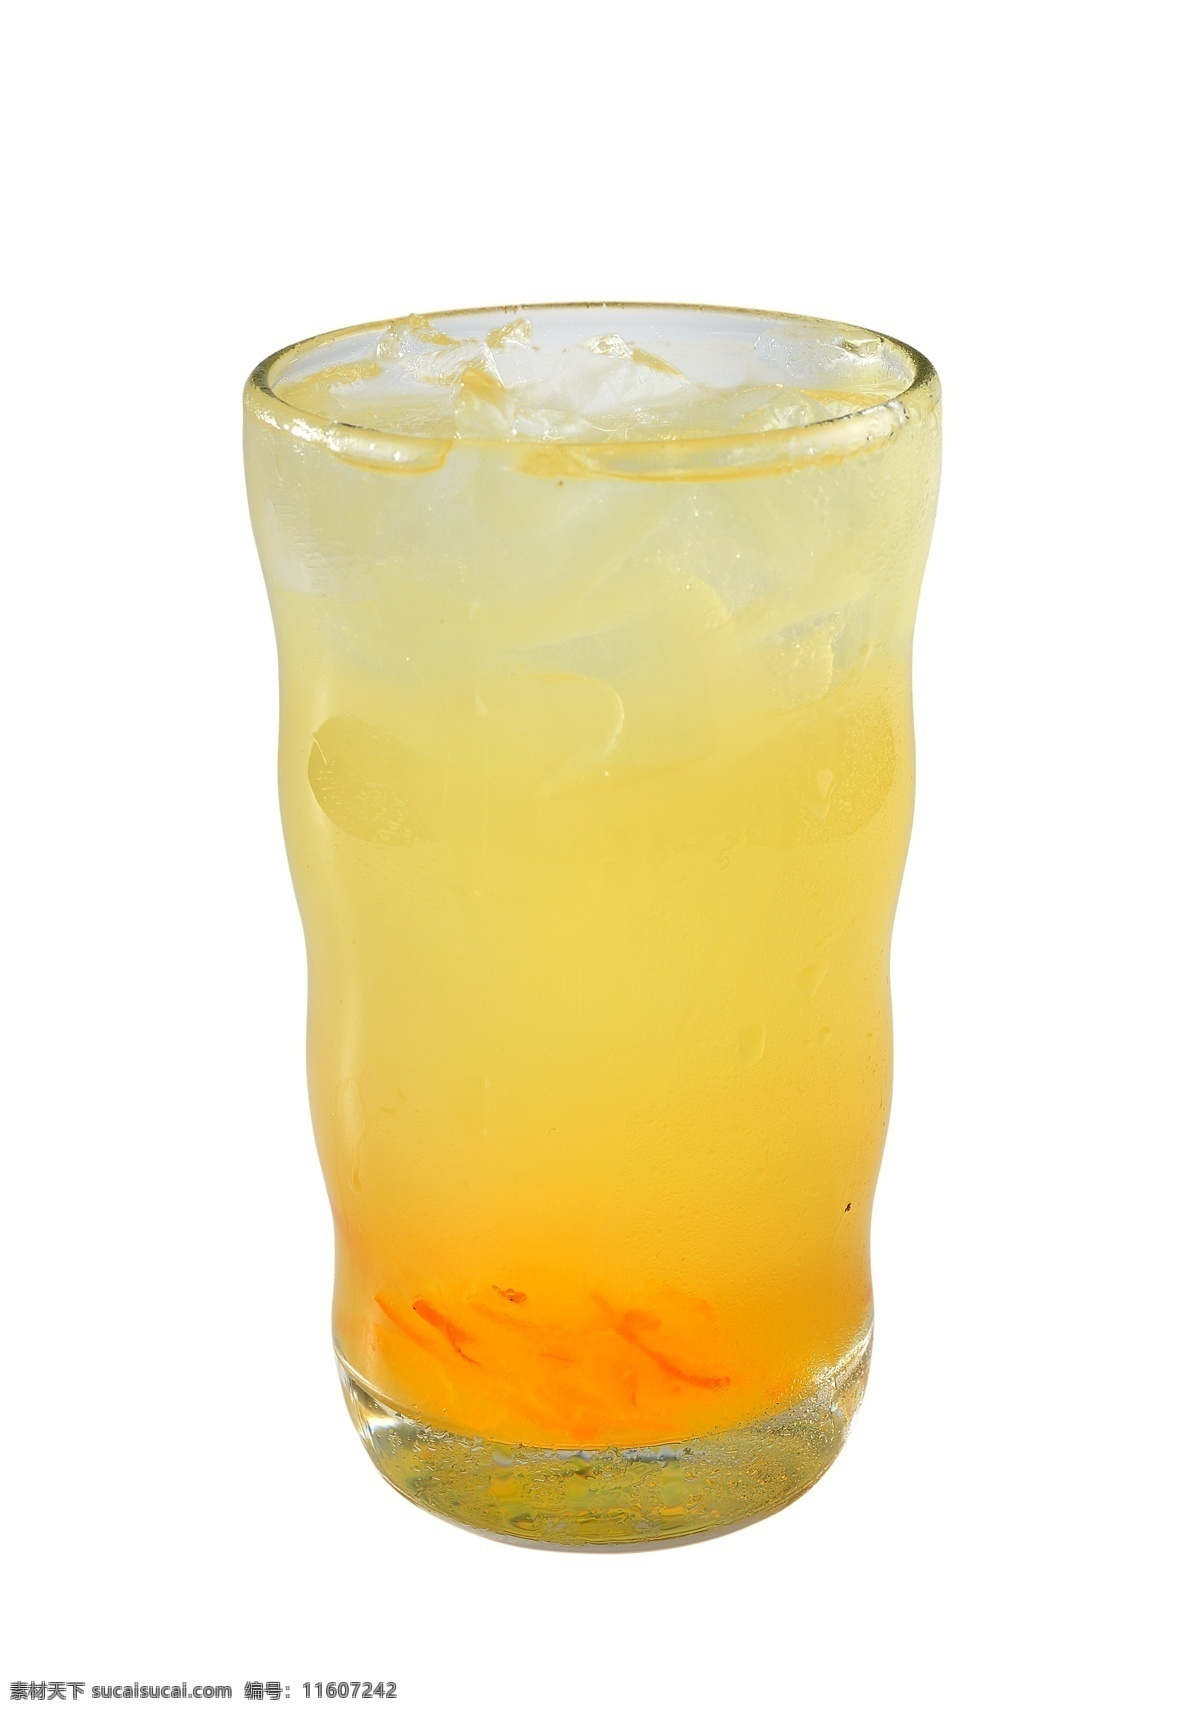 玻璃杯 里 蜂蜜 柚子 茶 蜂蜜柚子茶 维生素 维c 酸 甜 养颜 美容 柚子皮 分层